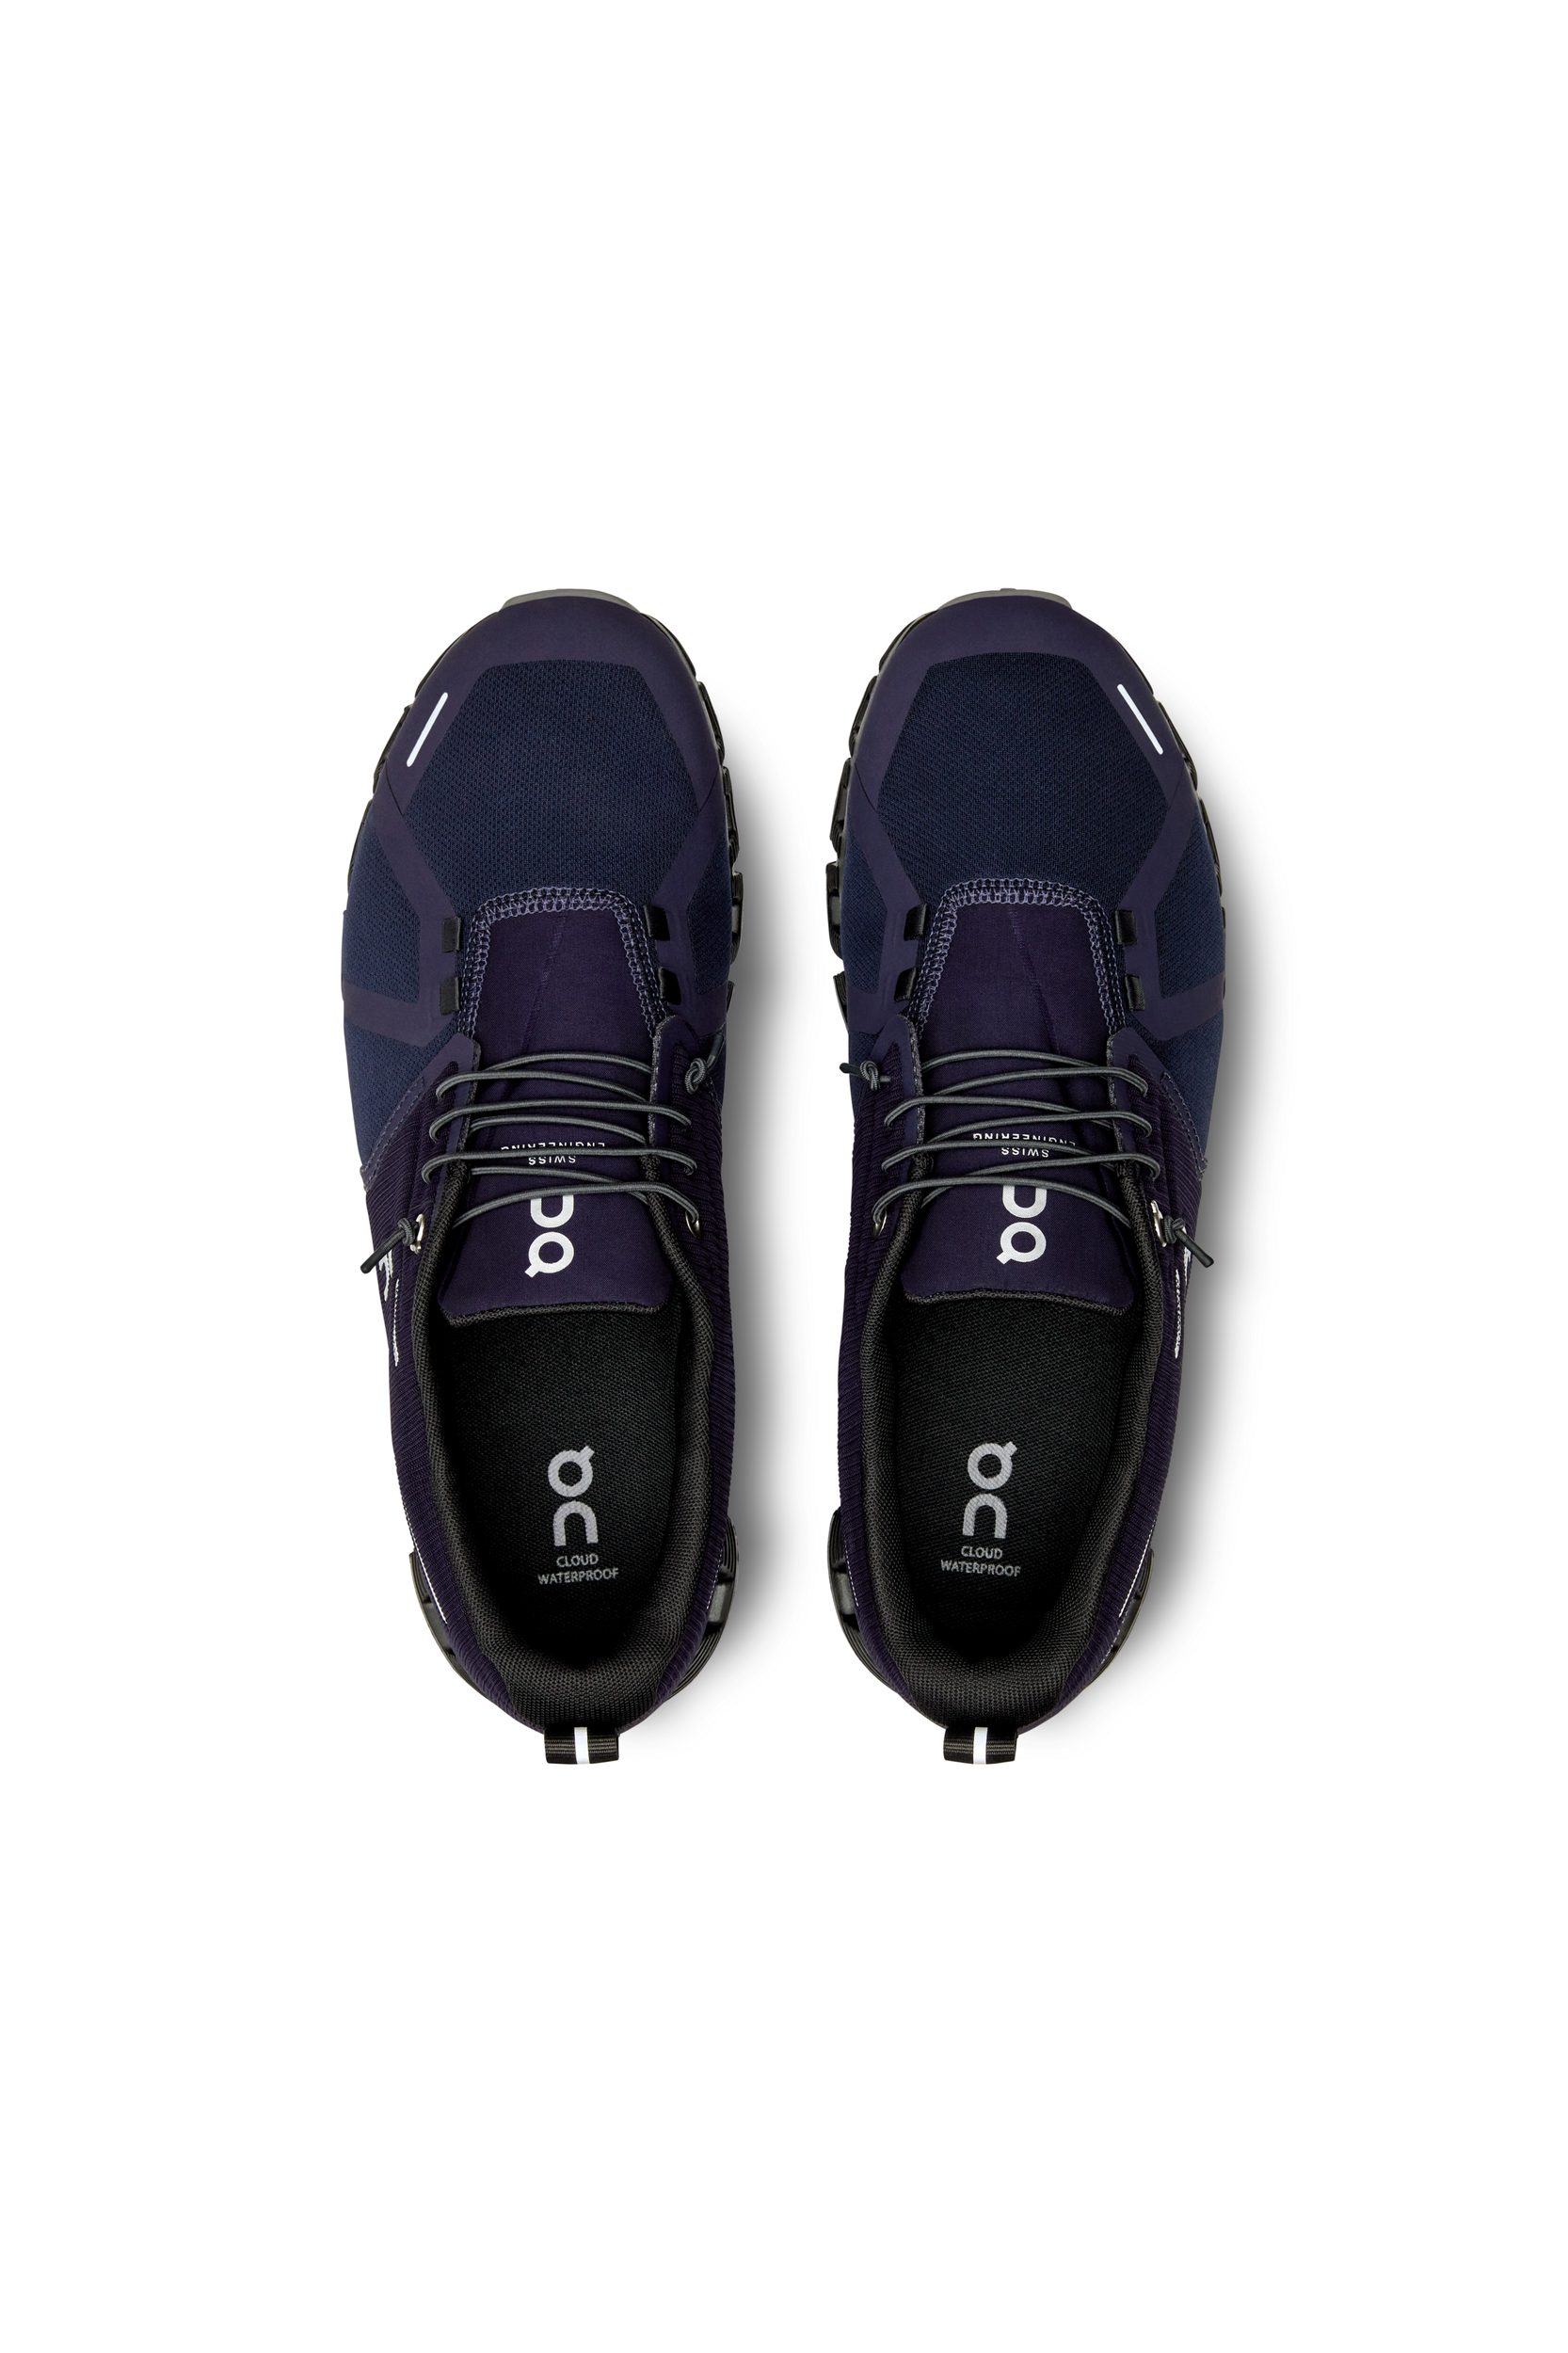 ECCO Soft 7 Sneaker (Men) - Dove/Magnet – The Heel Shoe Fitters